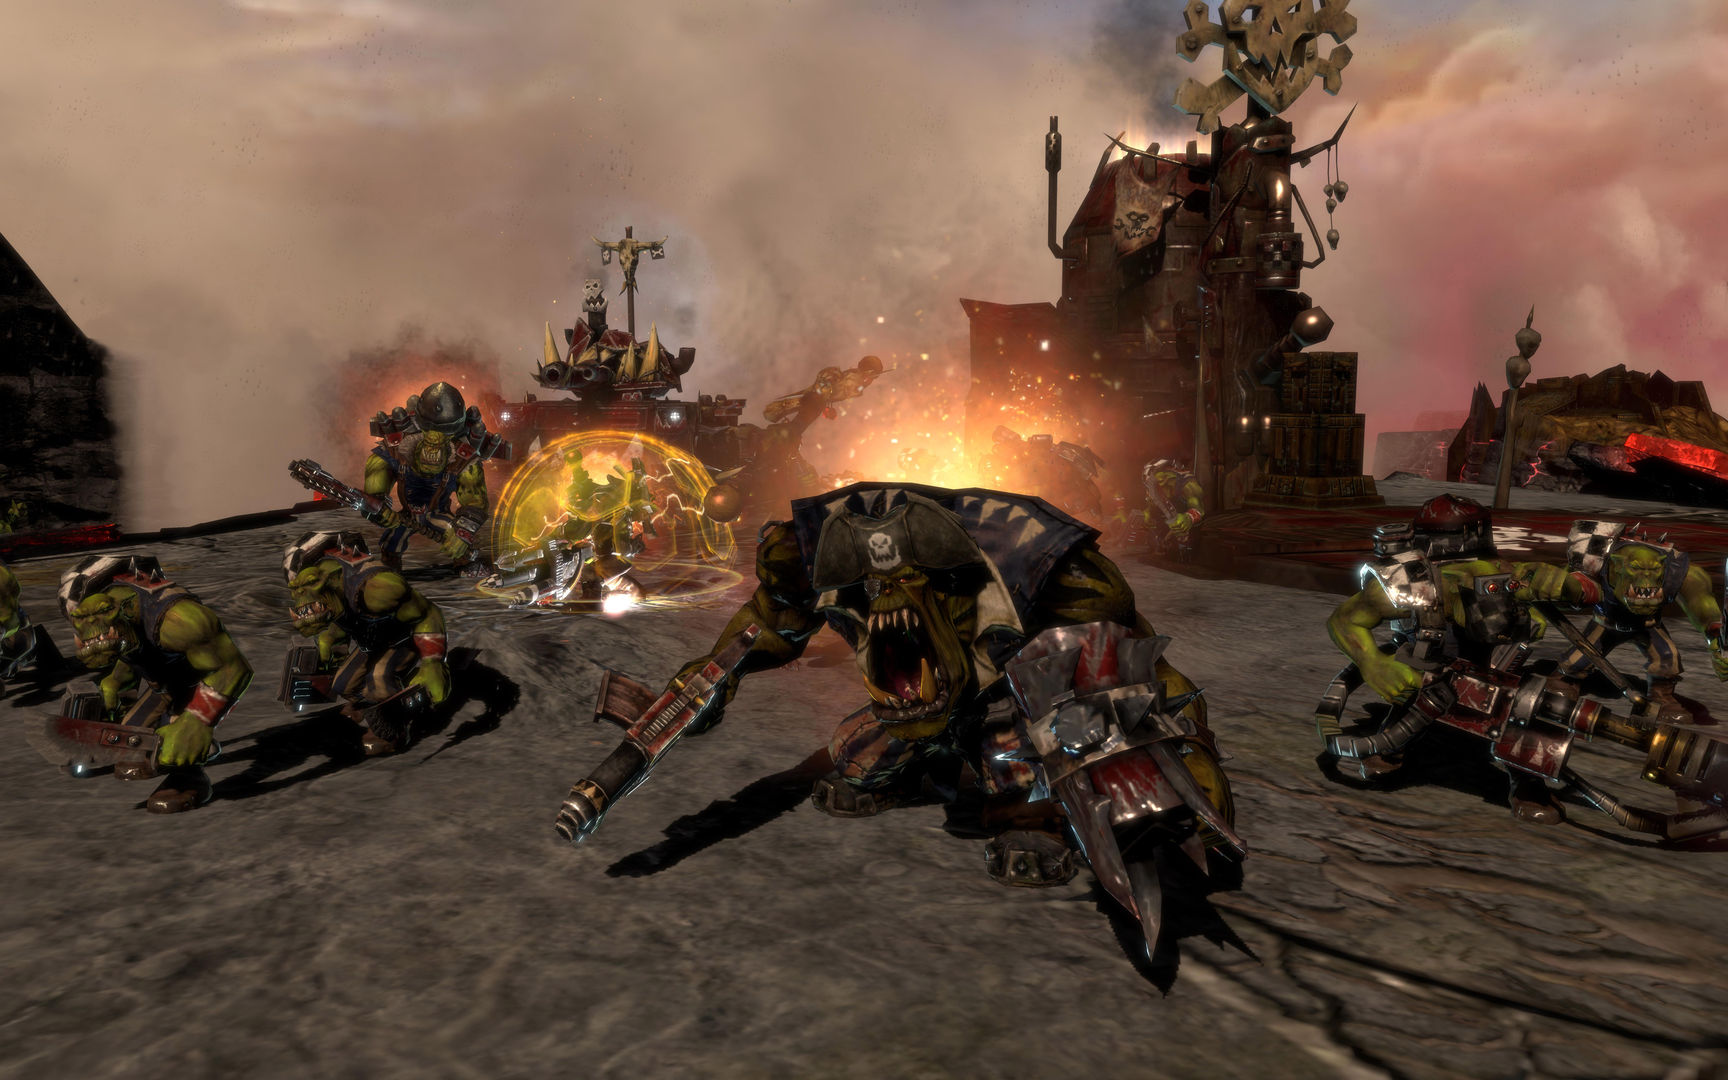 warhammer dawn of war 3 steam download free